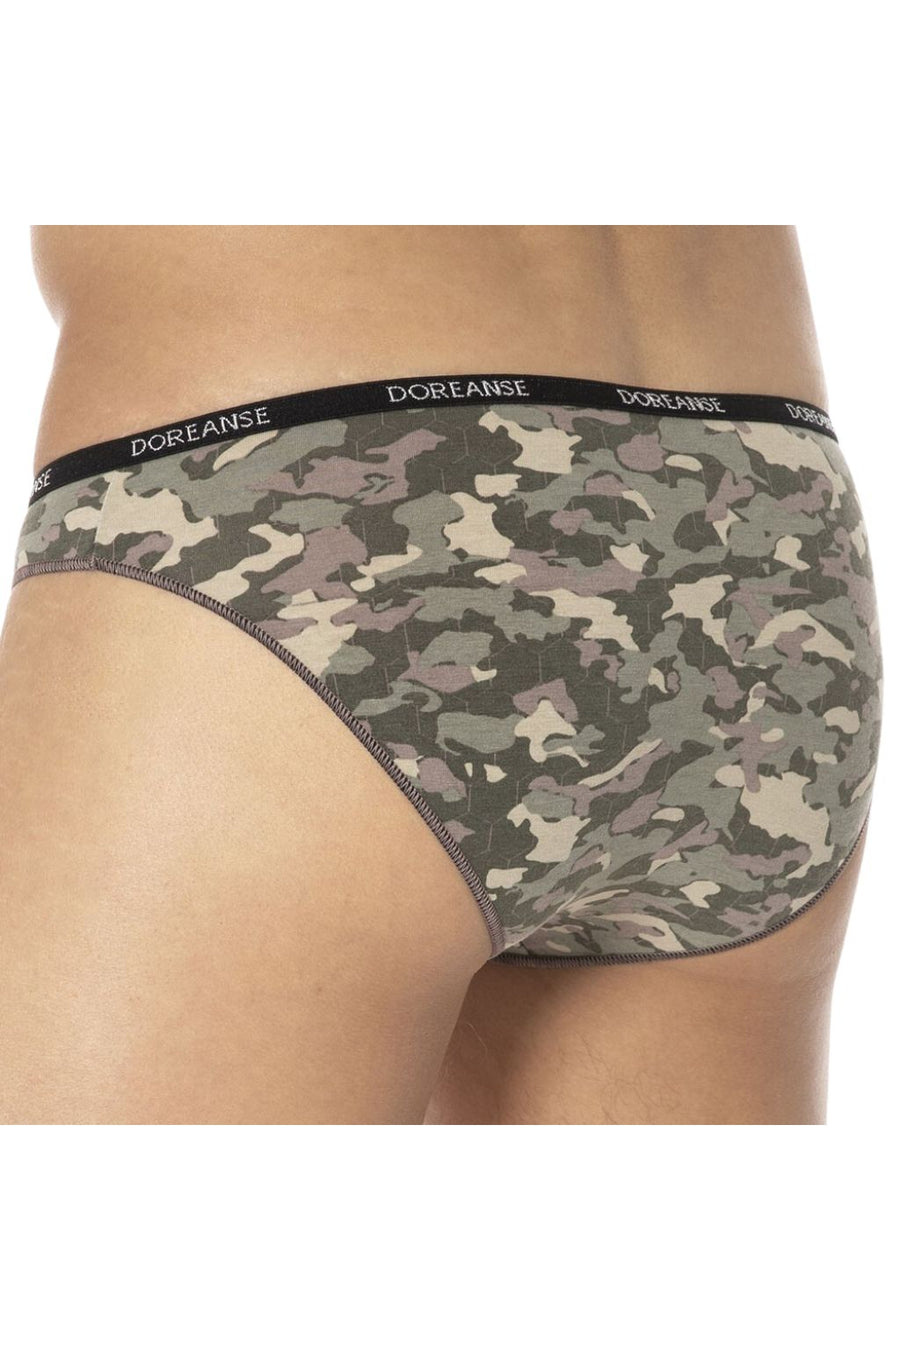 Man Mini Briefs Underwear Arrival Male Sexy Camouflage Bikini